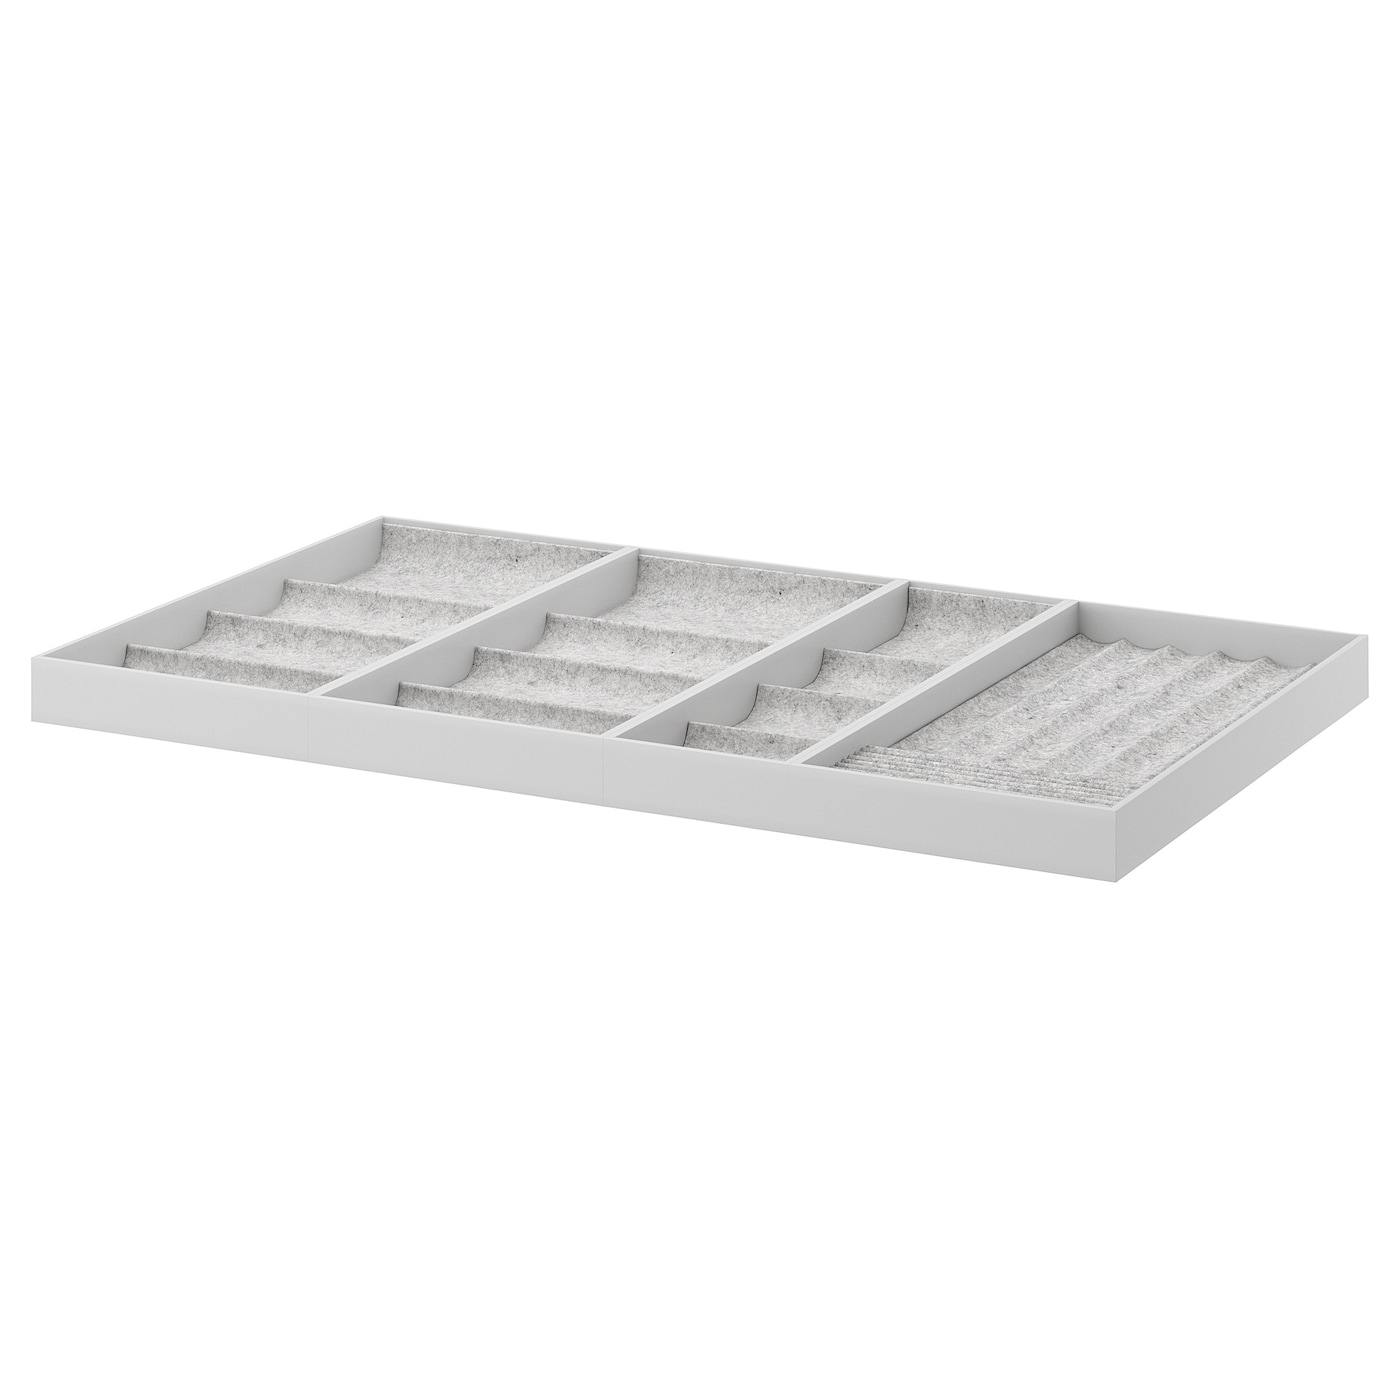 Лоток для столовых приборов - IKEA KOMPLEMENT, 100x58 см, светло-серый, КОМПЛИМЕНТ ИКЕА